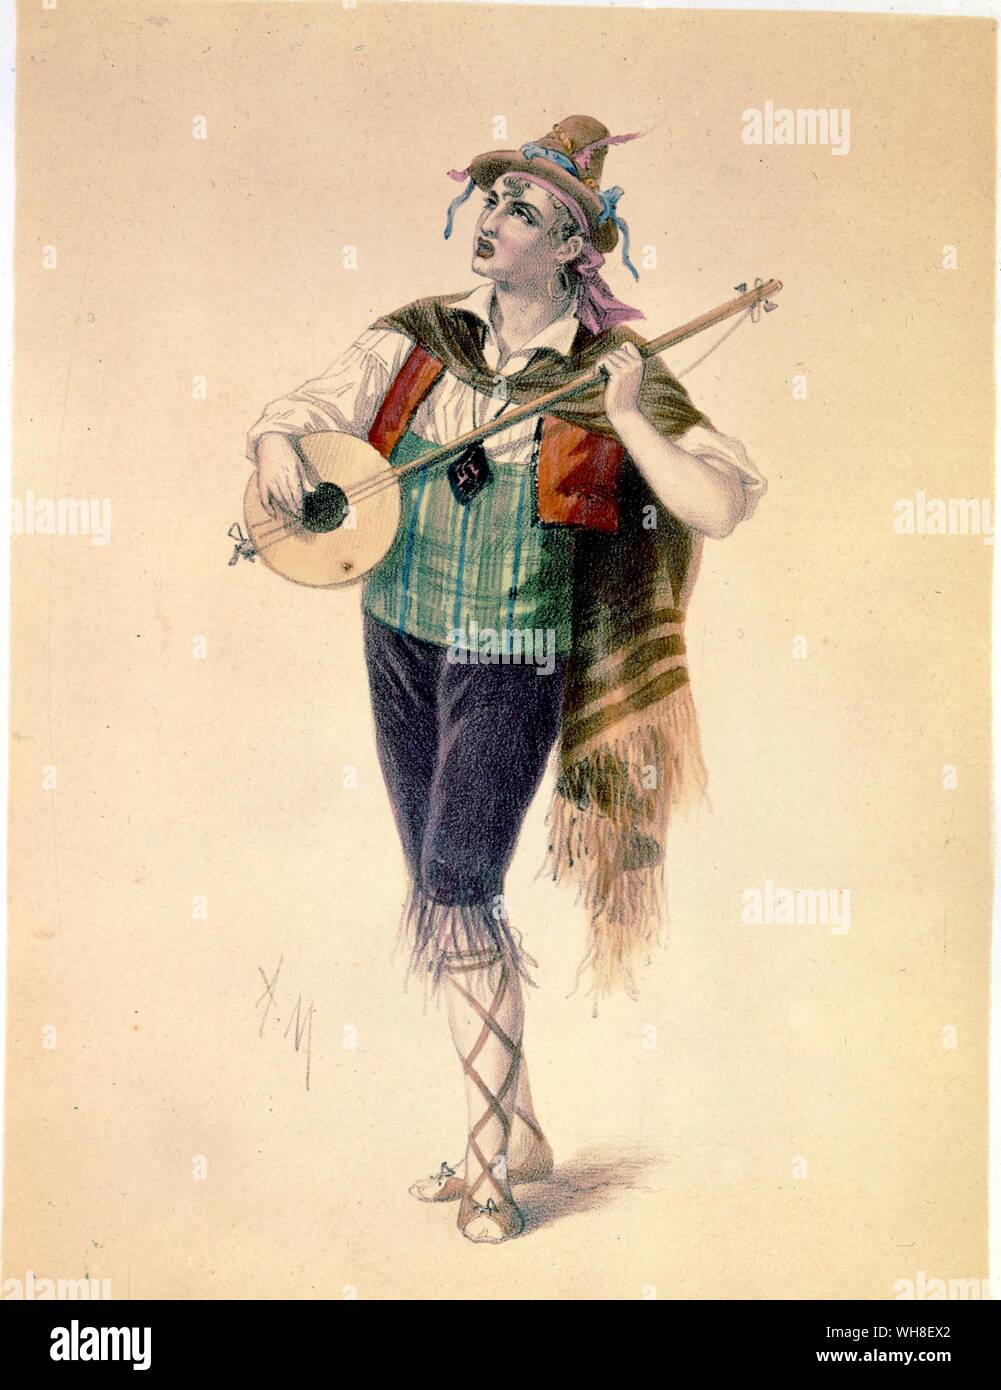 L'attore Dupuis Piquillo in Offenbach dell'Operetta La Périchole (Périchole) 1868. Costumi des teatri (i costumi dei teatri) 1860. Jacques Offenbach (1819-1880) era un tedesco-nato, compositore francese ed il violoncellista. Egli è stato uno dei creatori della forma di operetta, un precursore della moderna commedia musicale. Foto Stock